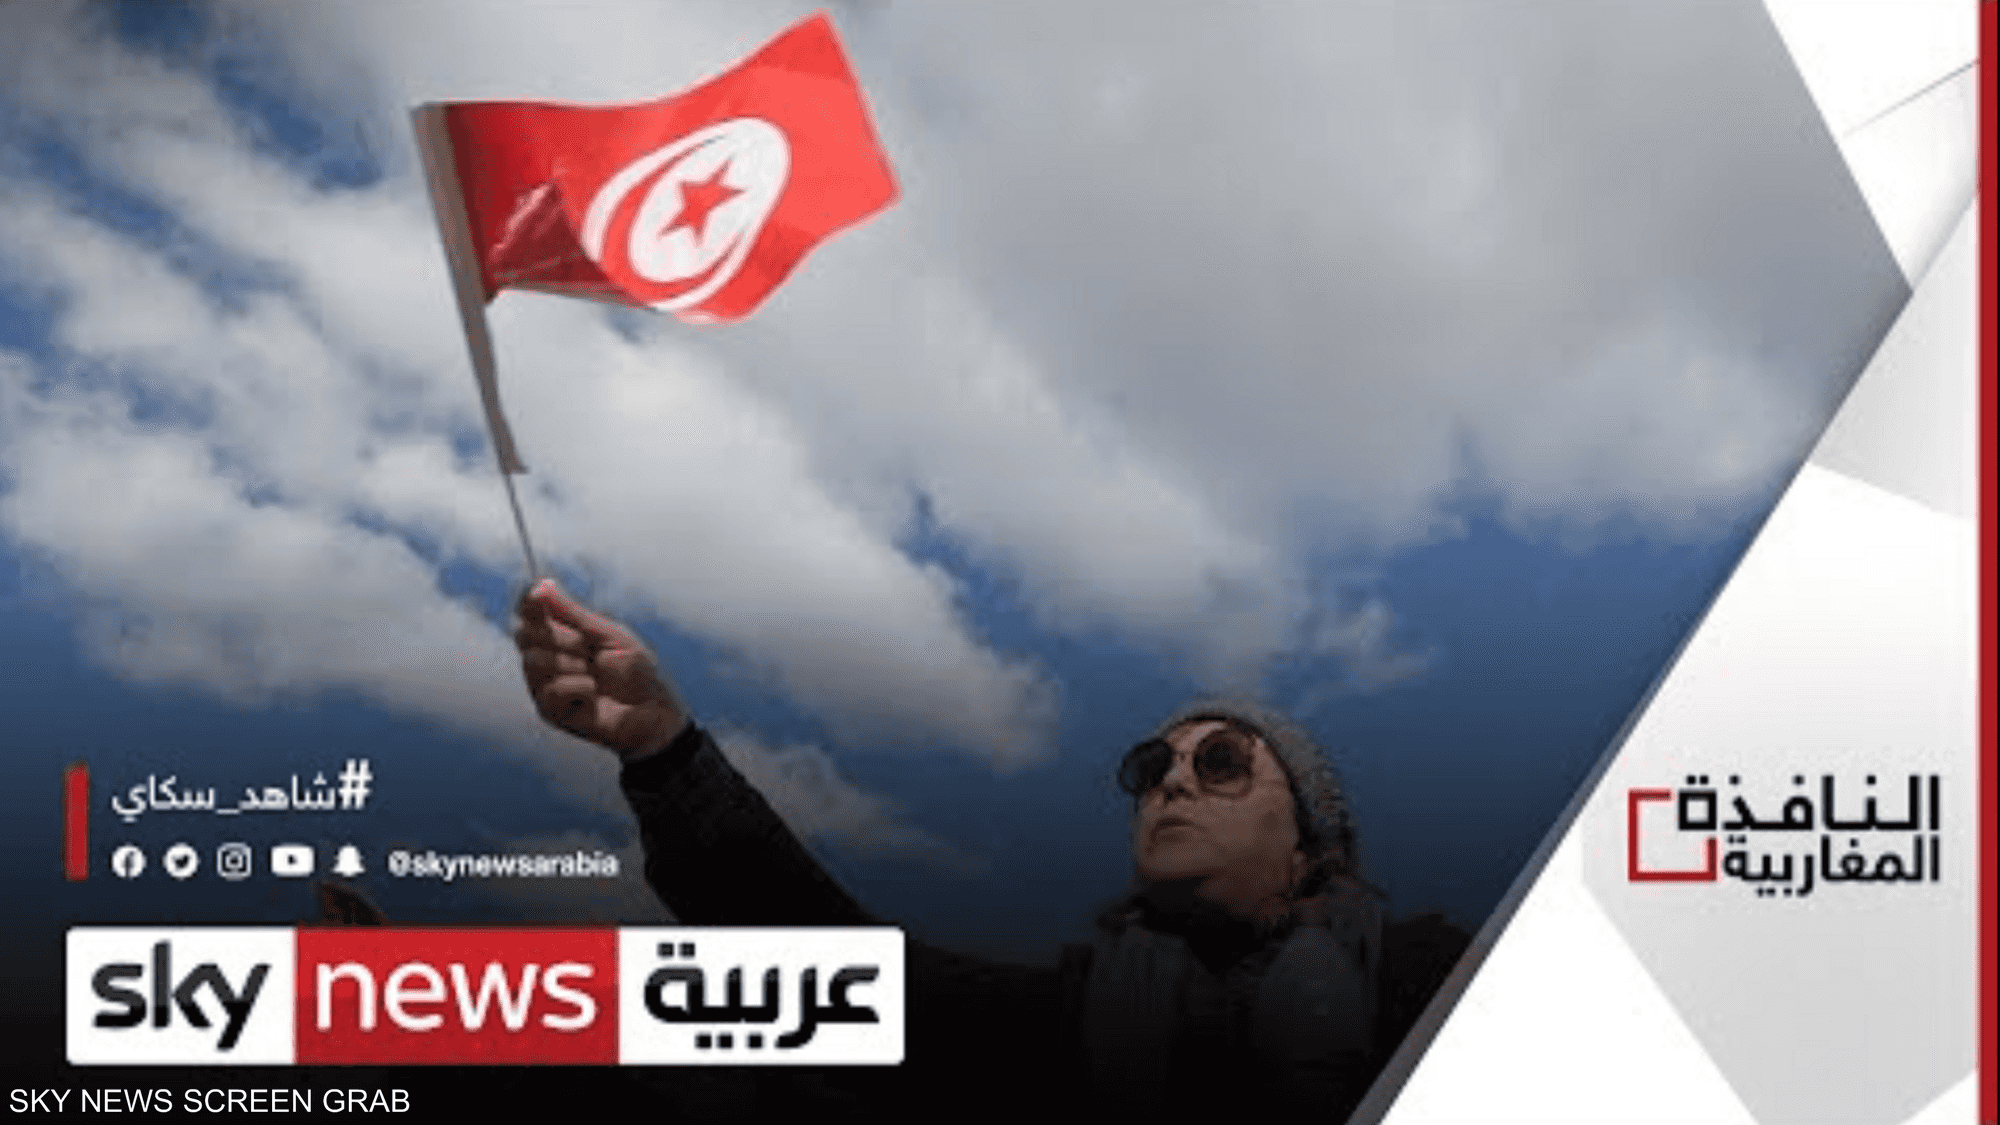 أحزاب تونسية ترفض تحويل رابطة حقوق الإنسان لمركز ديني